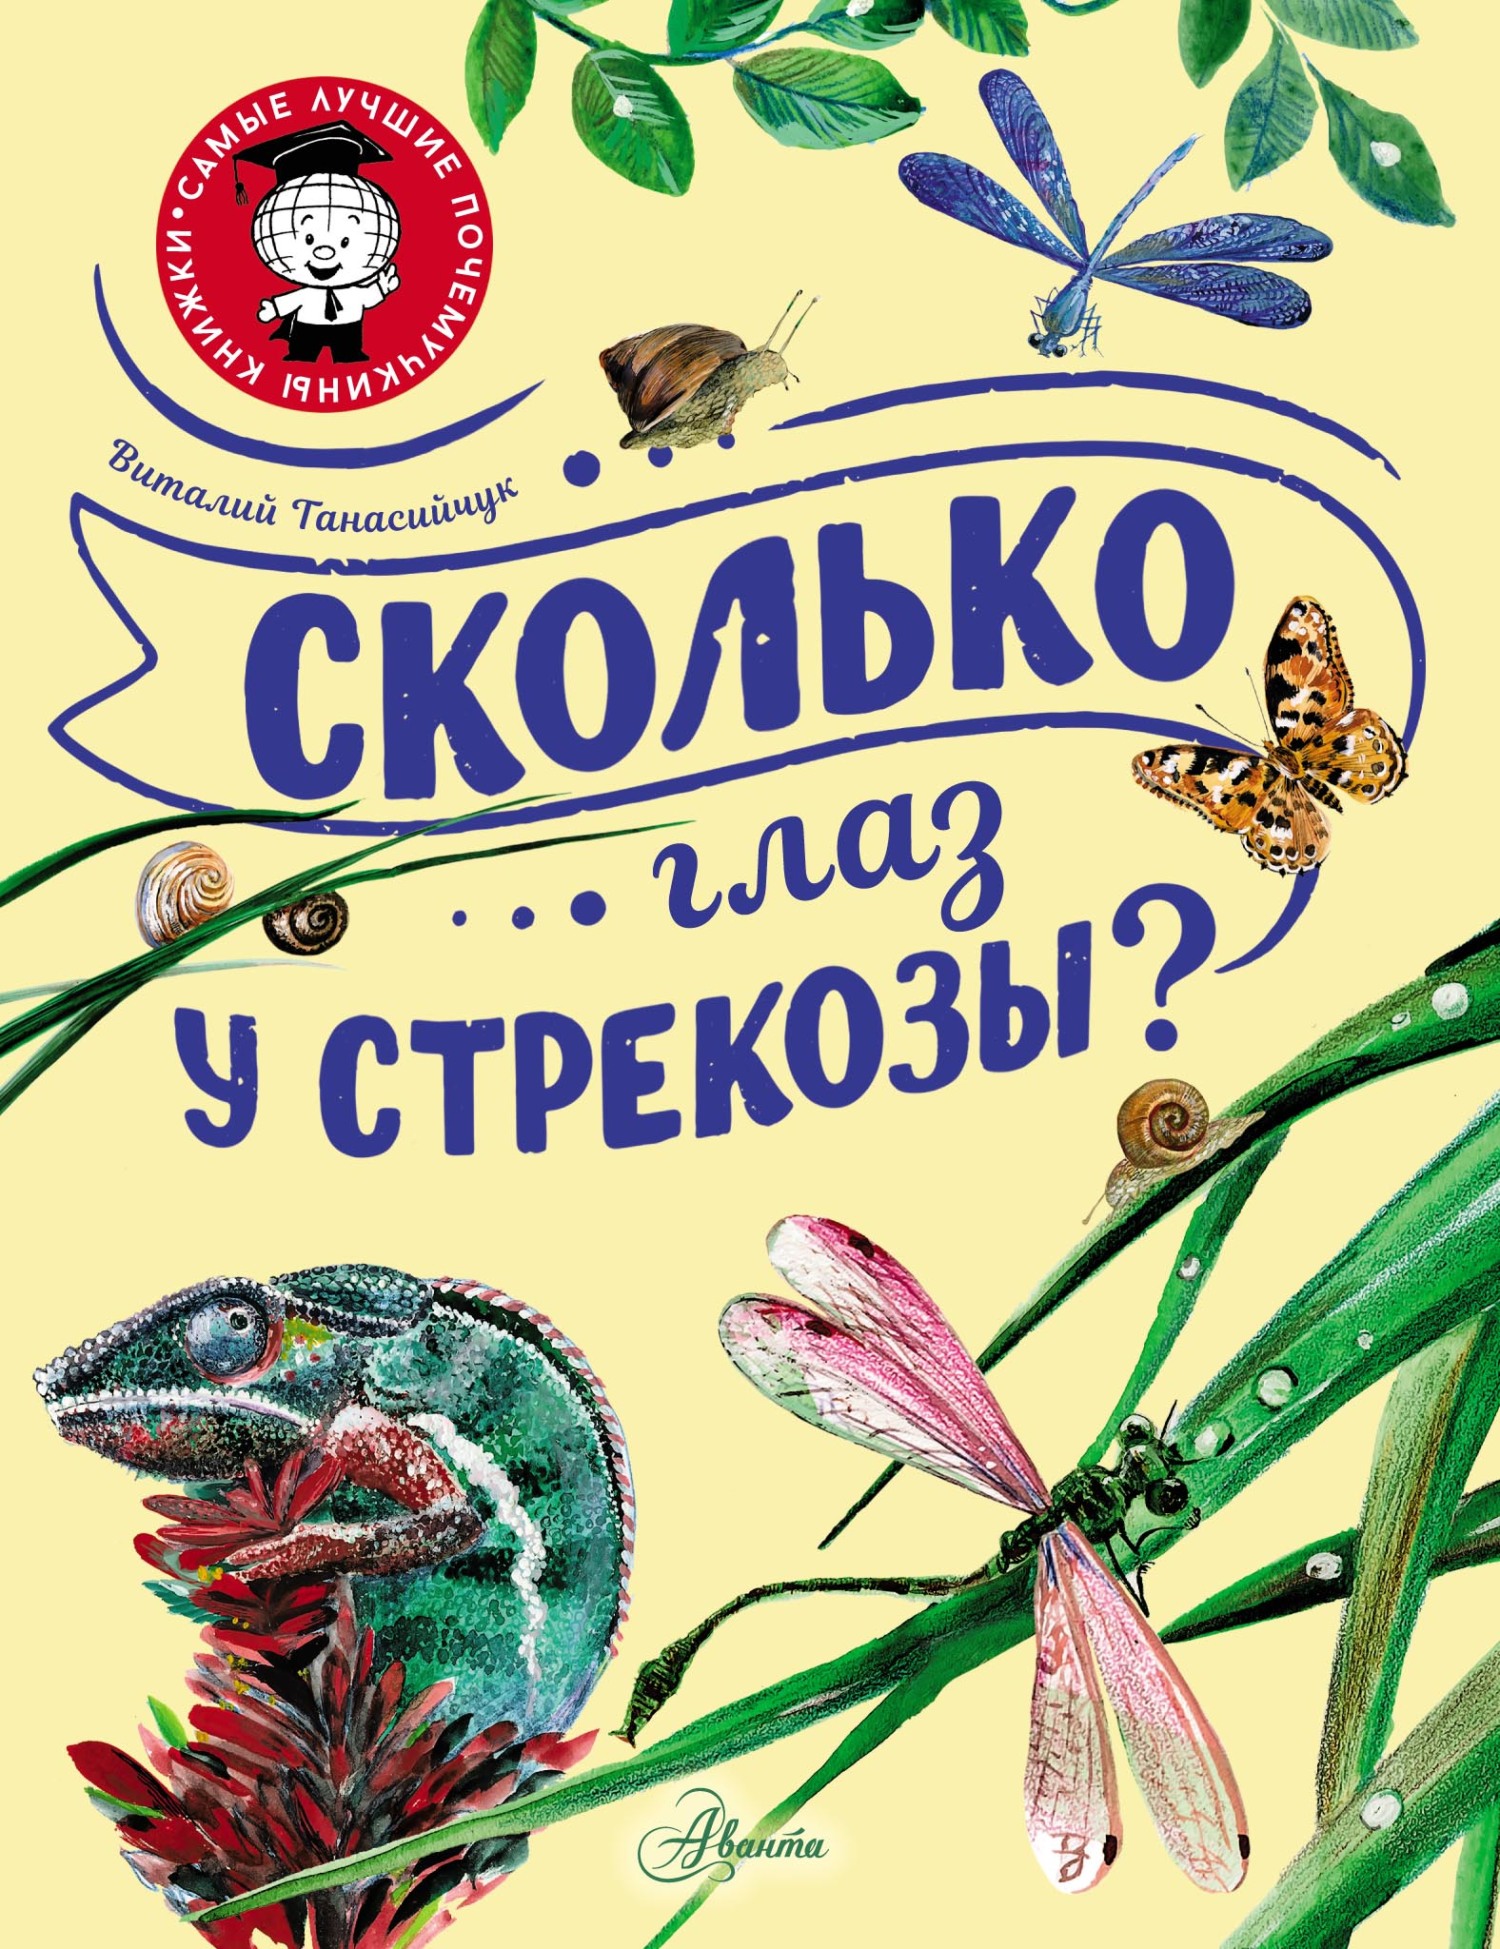 Сколько глаз у стрекозы?, Виталий Танасийчук – скачать pdf на ЛитРес